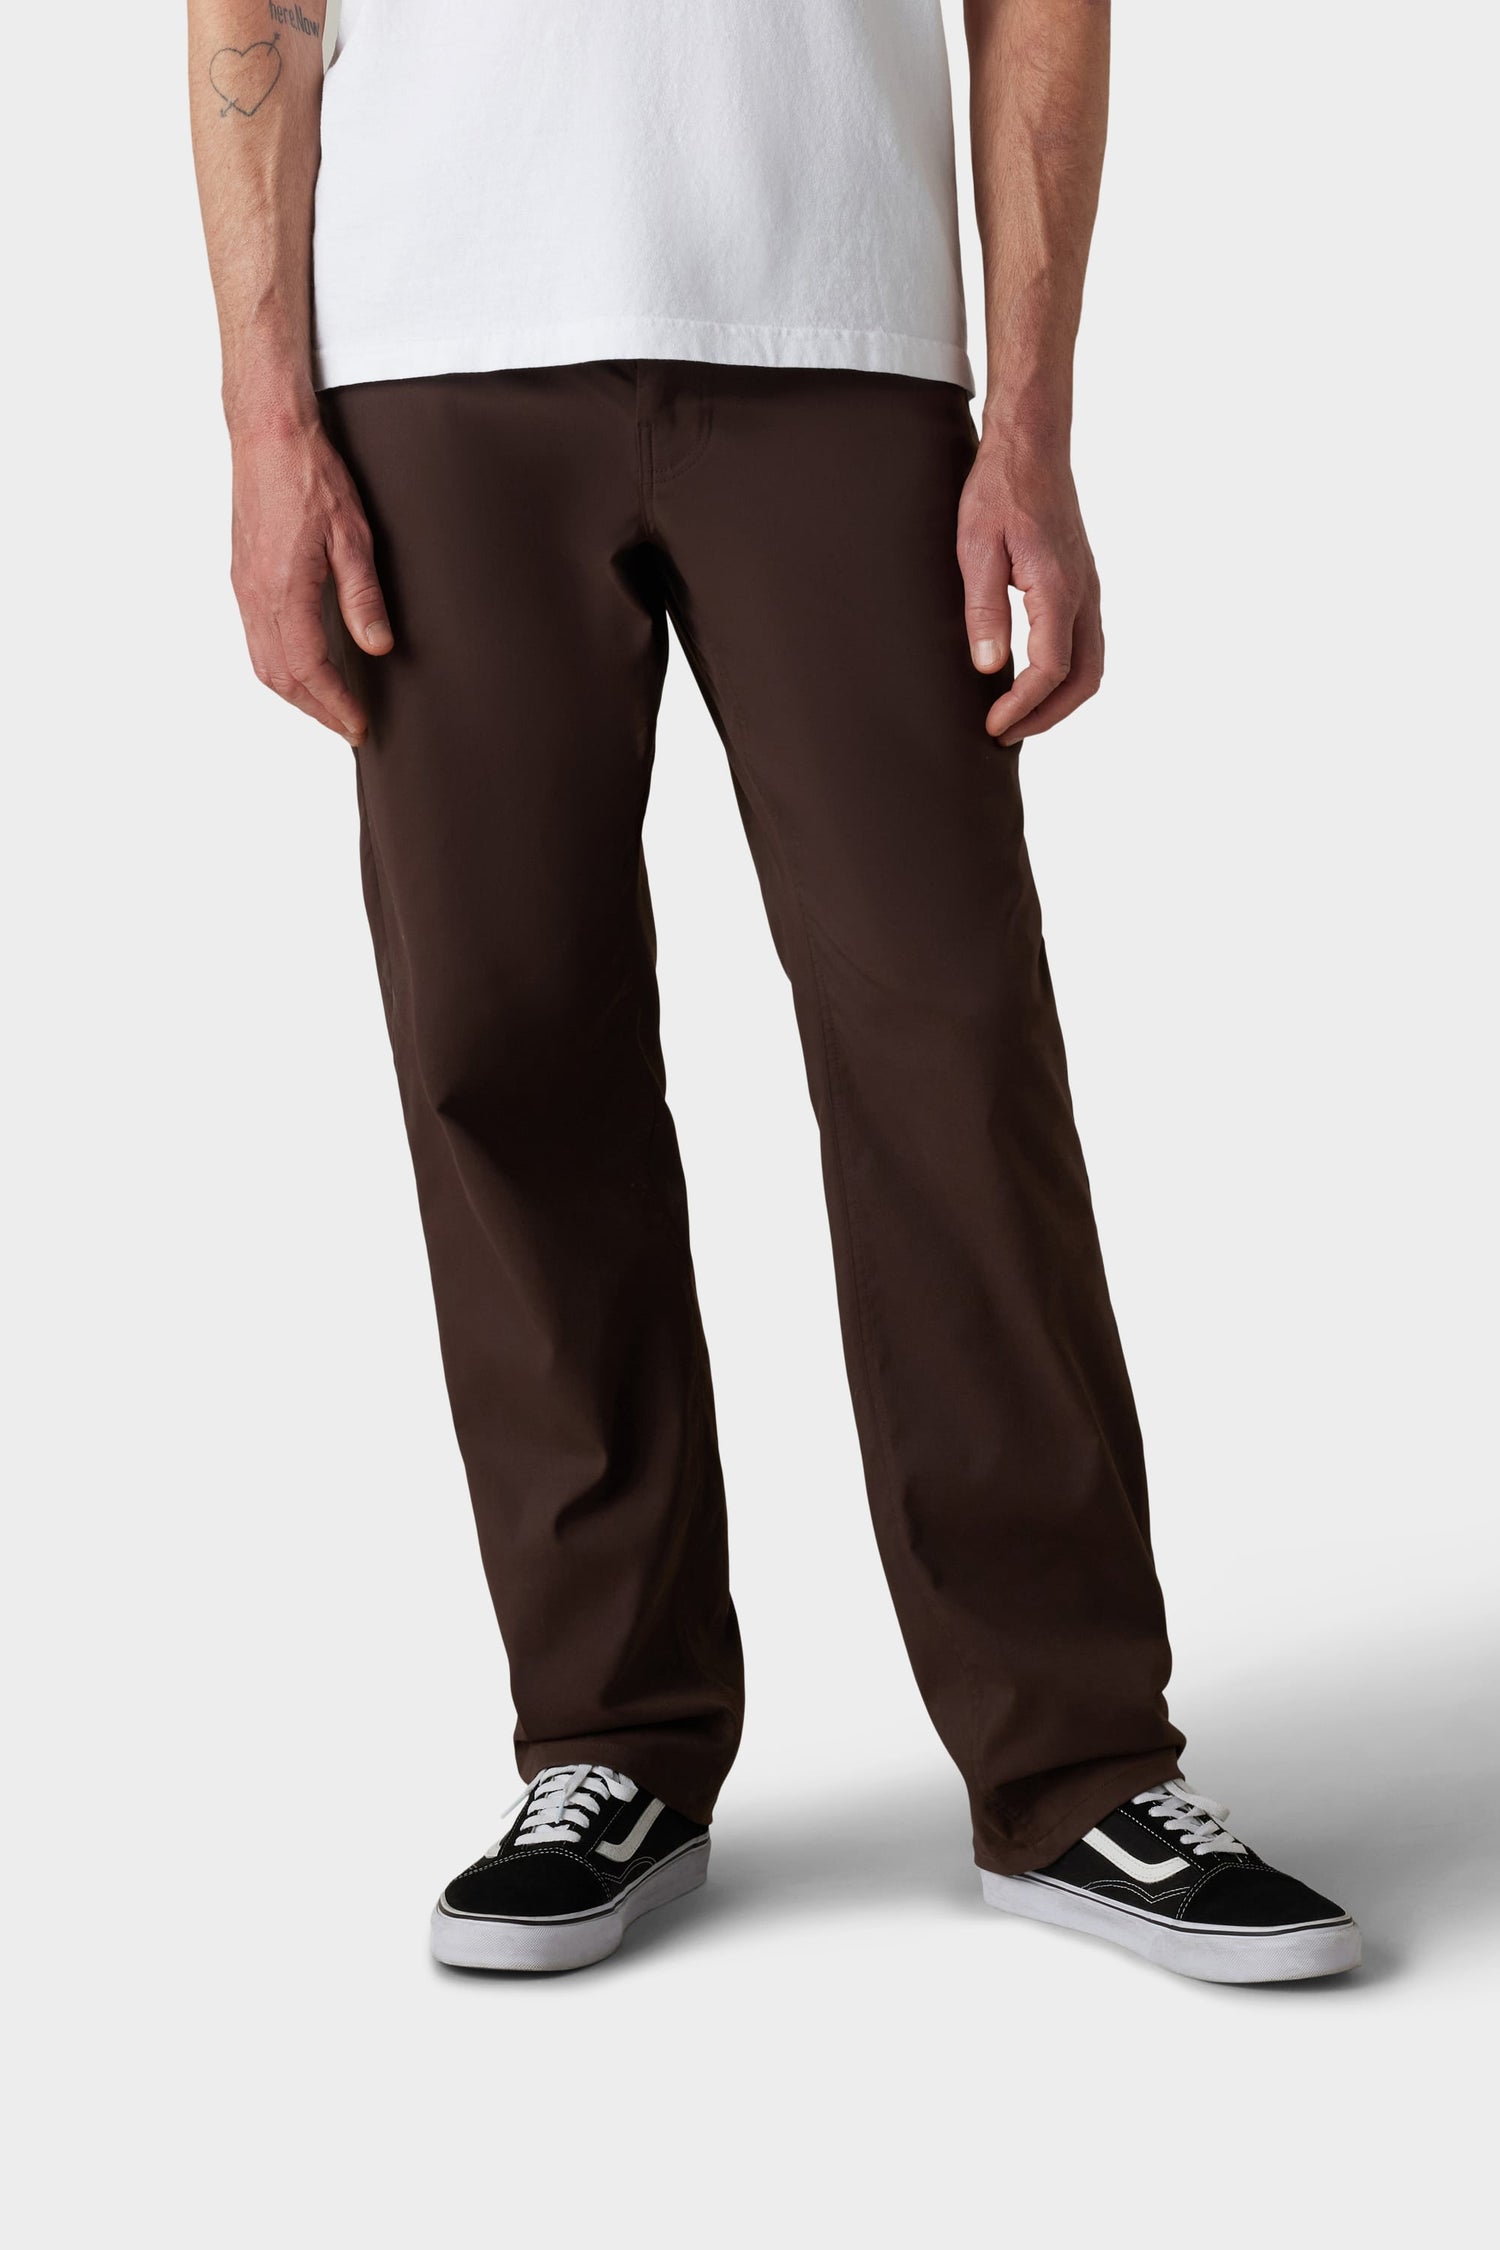 686 Technical Apparel  Men's Pants – 686.com